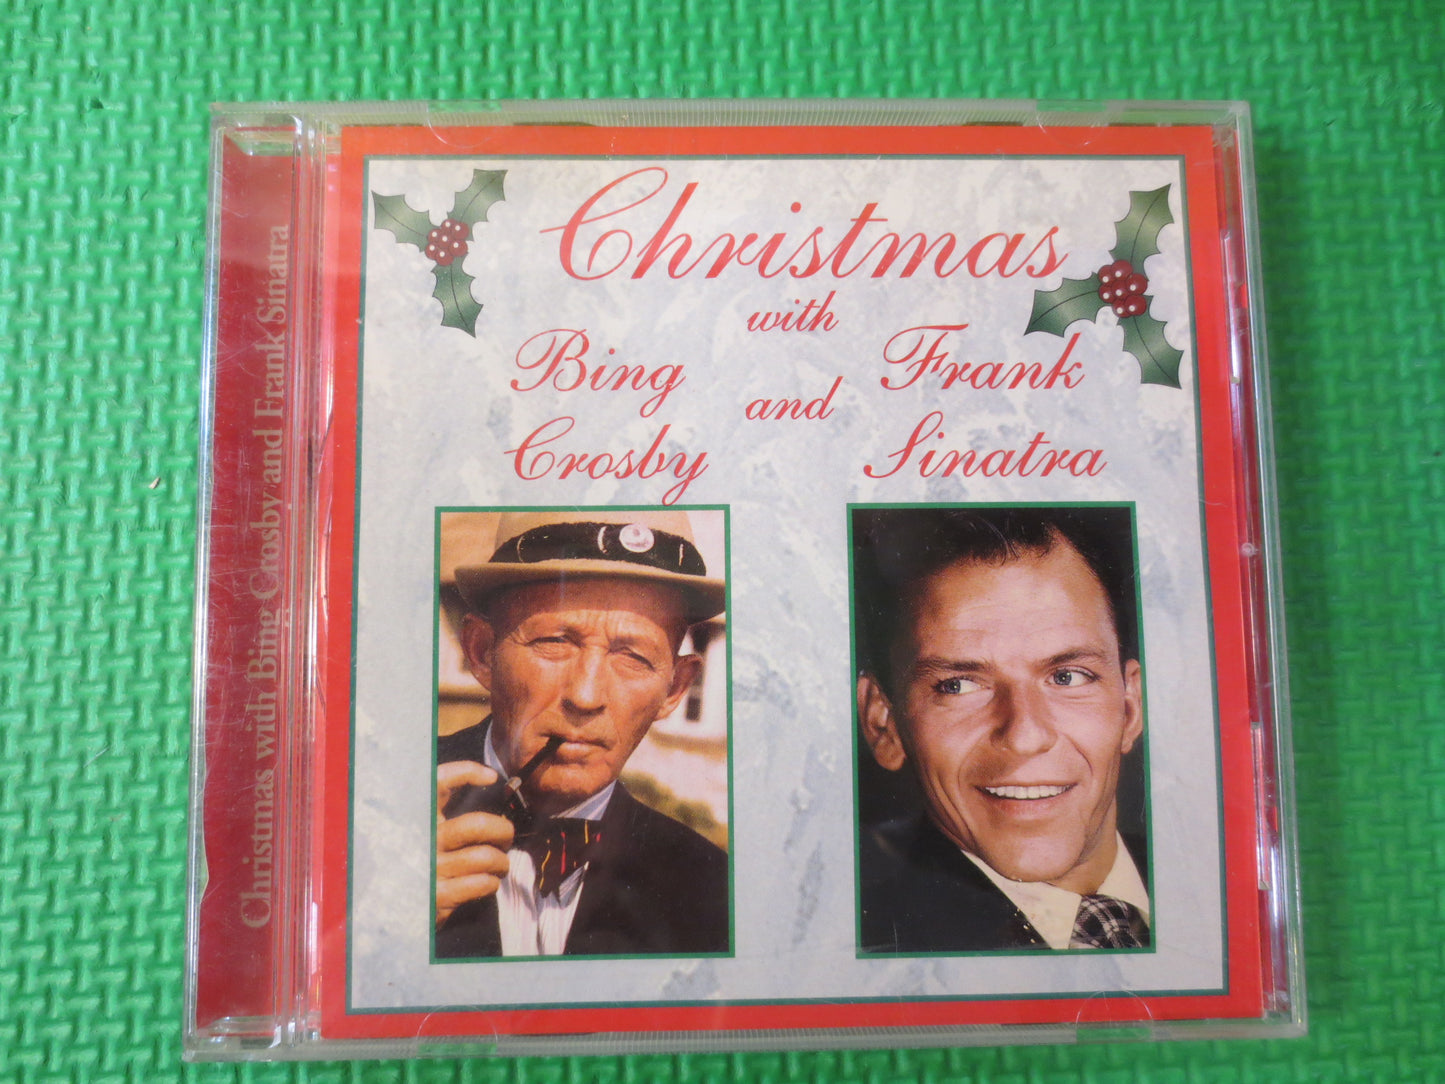 BING CROSBY Cd, CHRISTMAS Cd, Christmas Album, Christmas Music, Frank Sinatra Cd, Christmas Song, Vintage Cd, Compact Discs